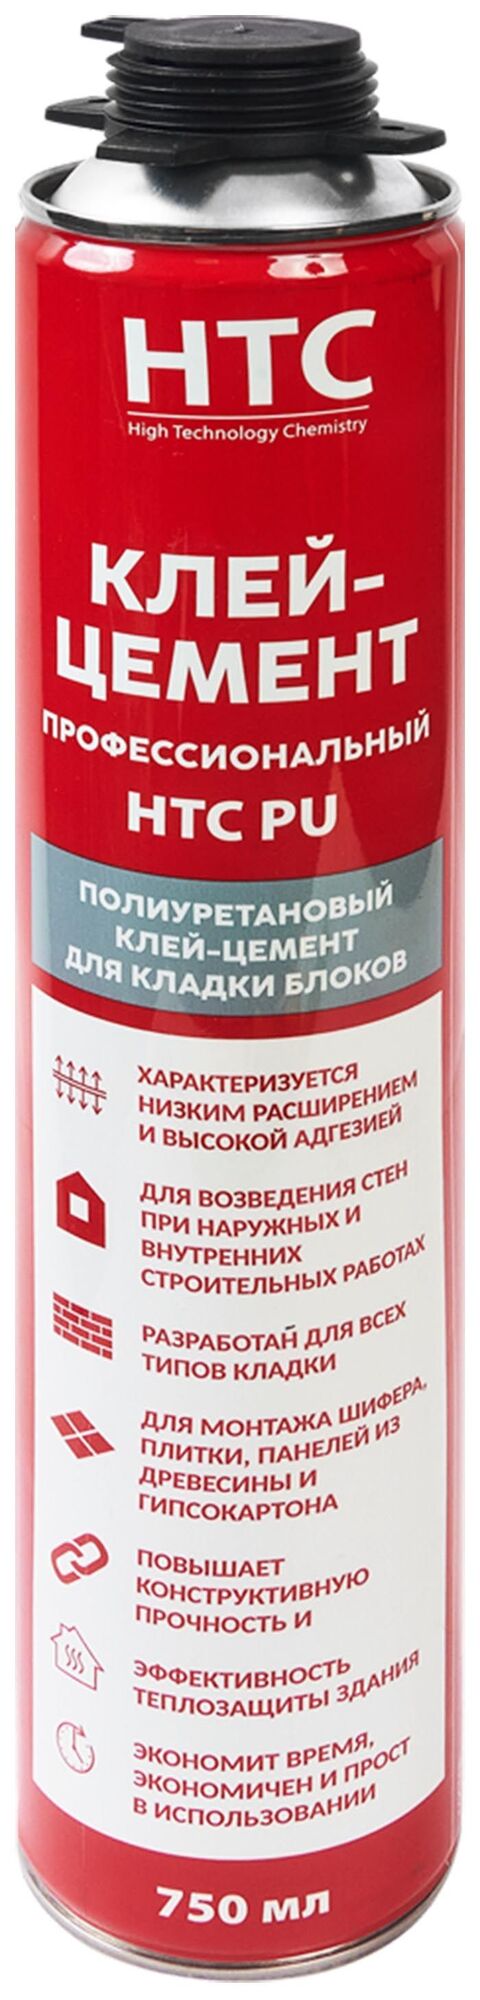 HTC Профессиональный клей-цемент полиуретановый (750мл) / HTC Профессиональный полиуретановый клей-цемент для кладки бло